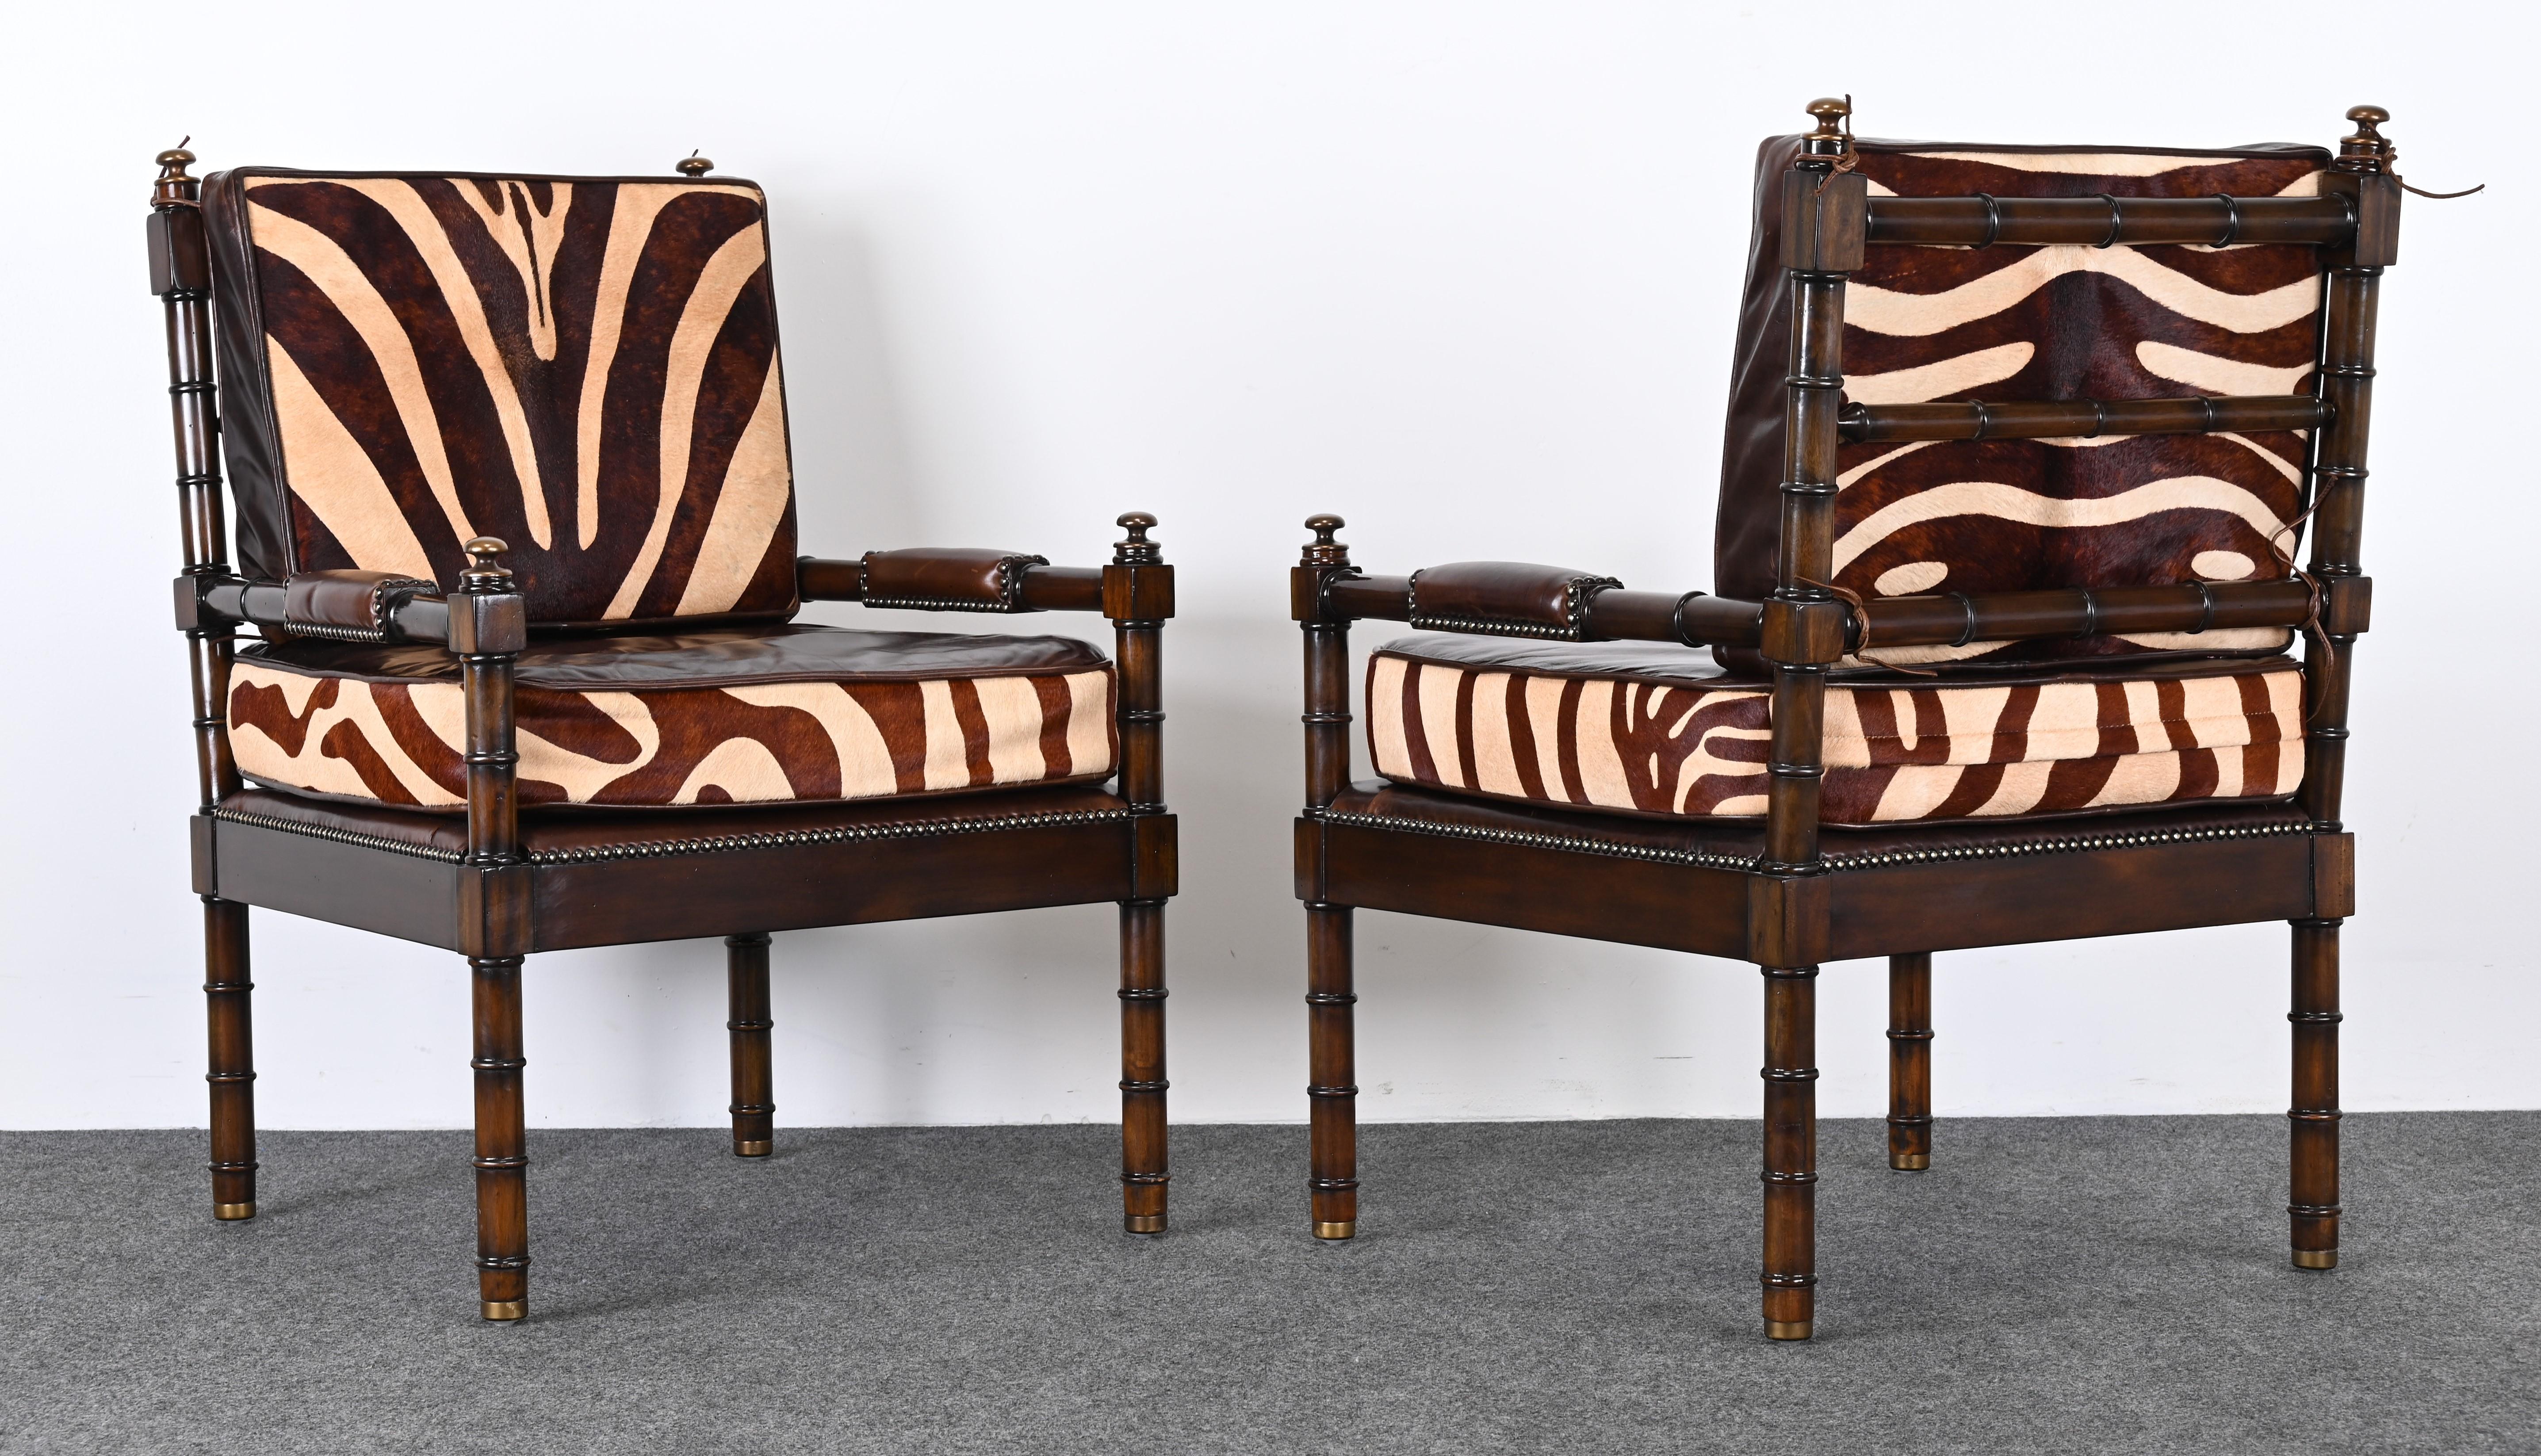 Une magnifique paire de fauteuils en faux bambou acajou avec tissu en cuir et peau de vache imprimé zébré. Les chaises sont agrémentées d'embouts en laiton et de détails en cuir brut. Ces chaises s'intègrent parfaitement dans tout décor traditionnel